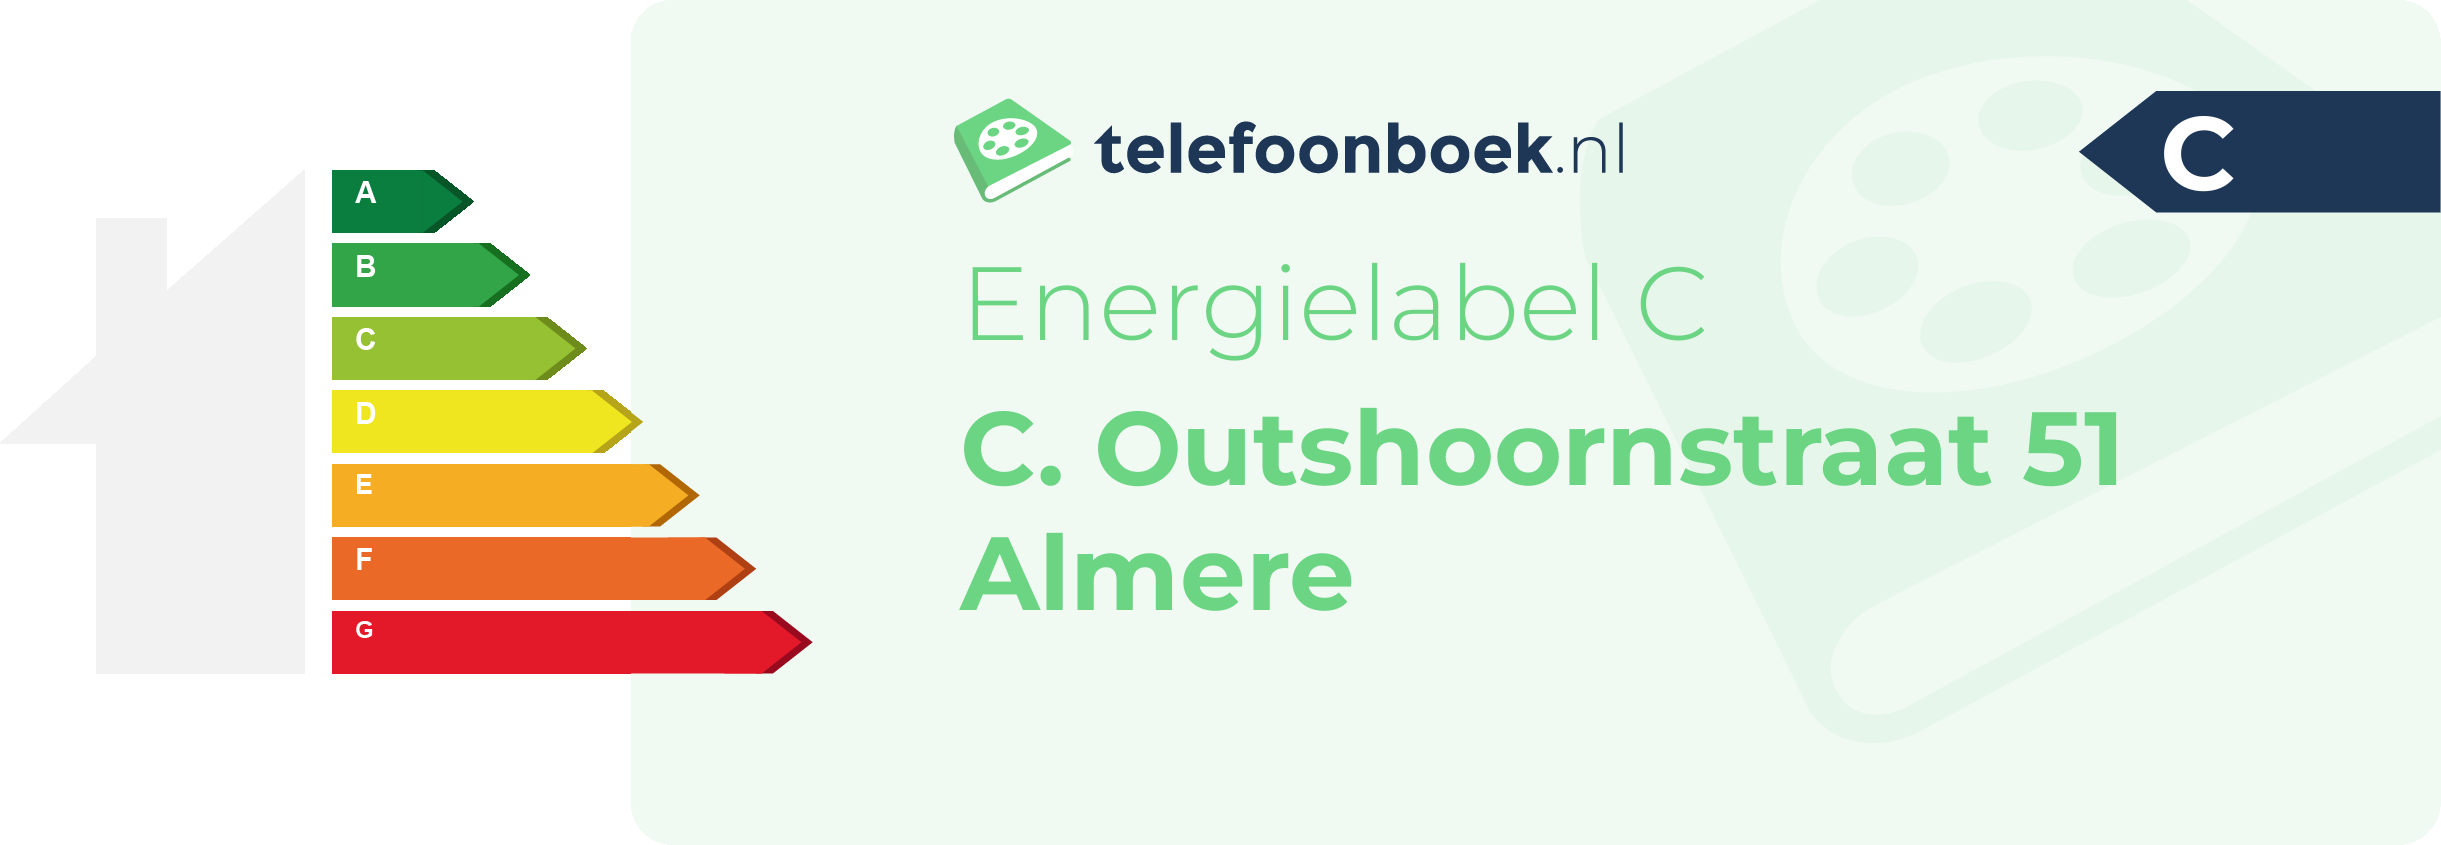 Energielabel C. Outshoornstraat 51 Almere